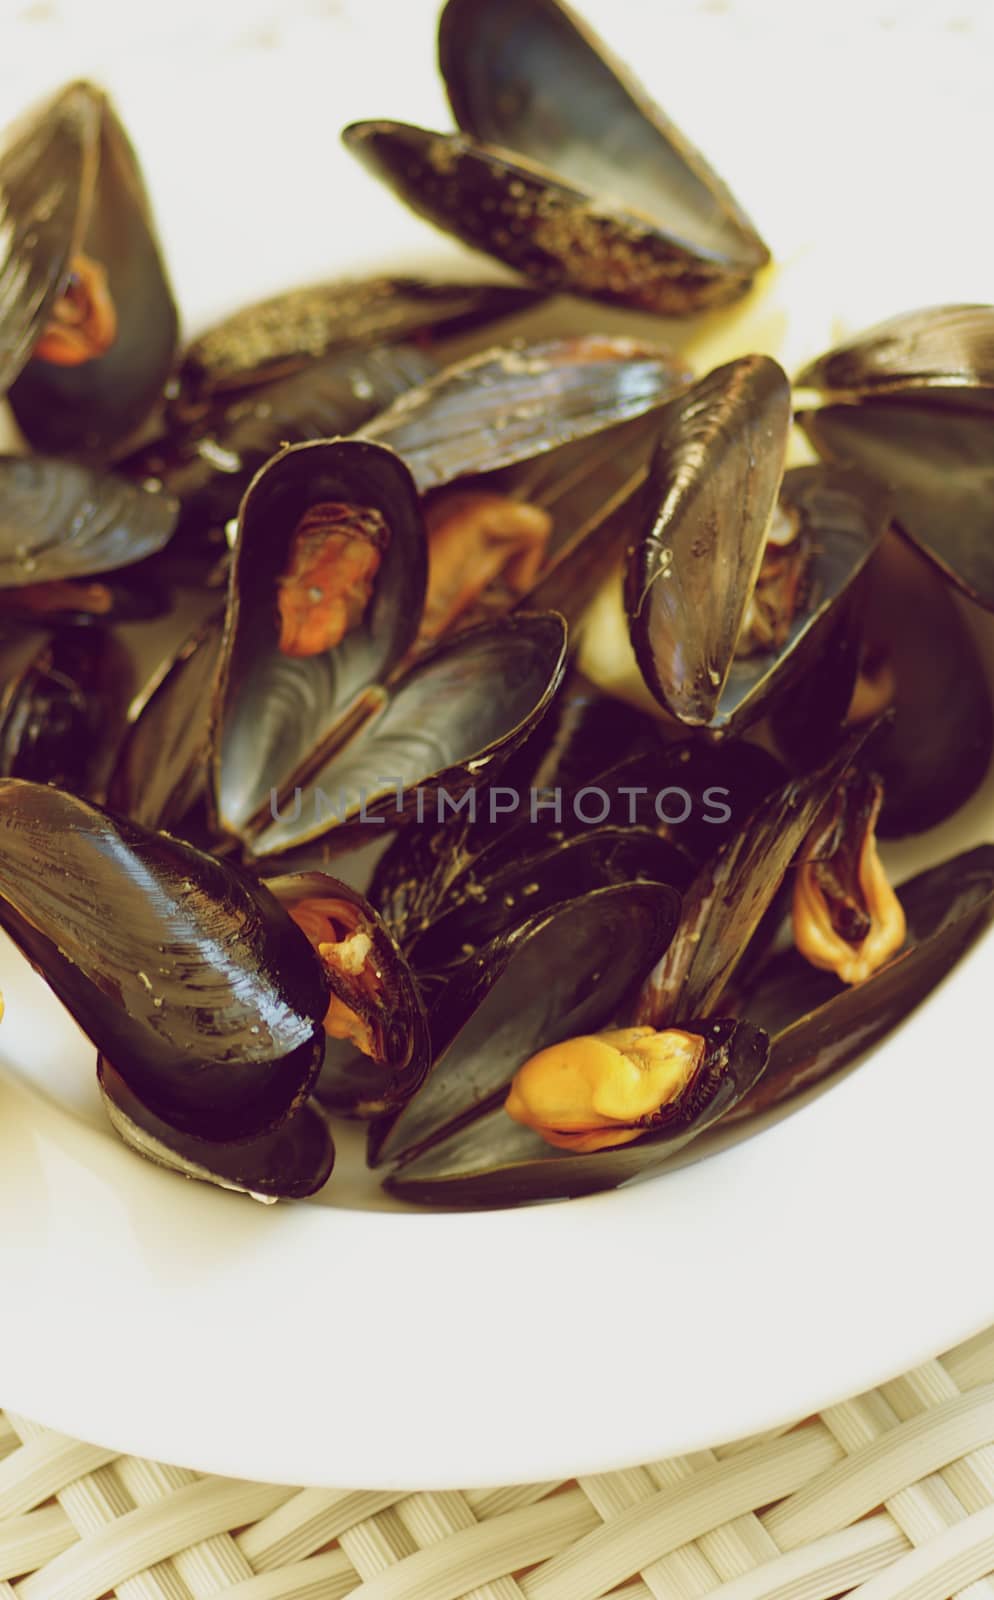 Mussels by zhekos